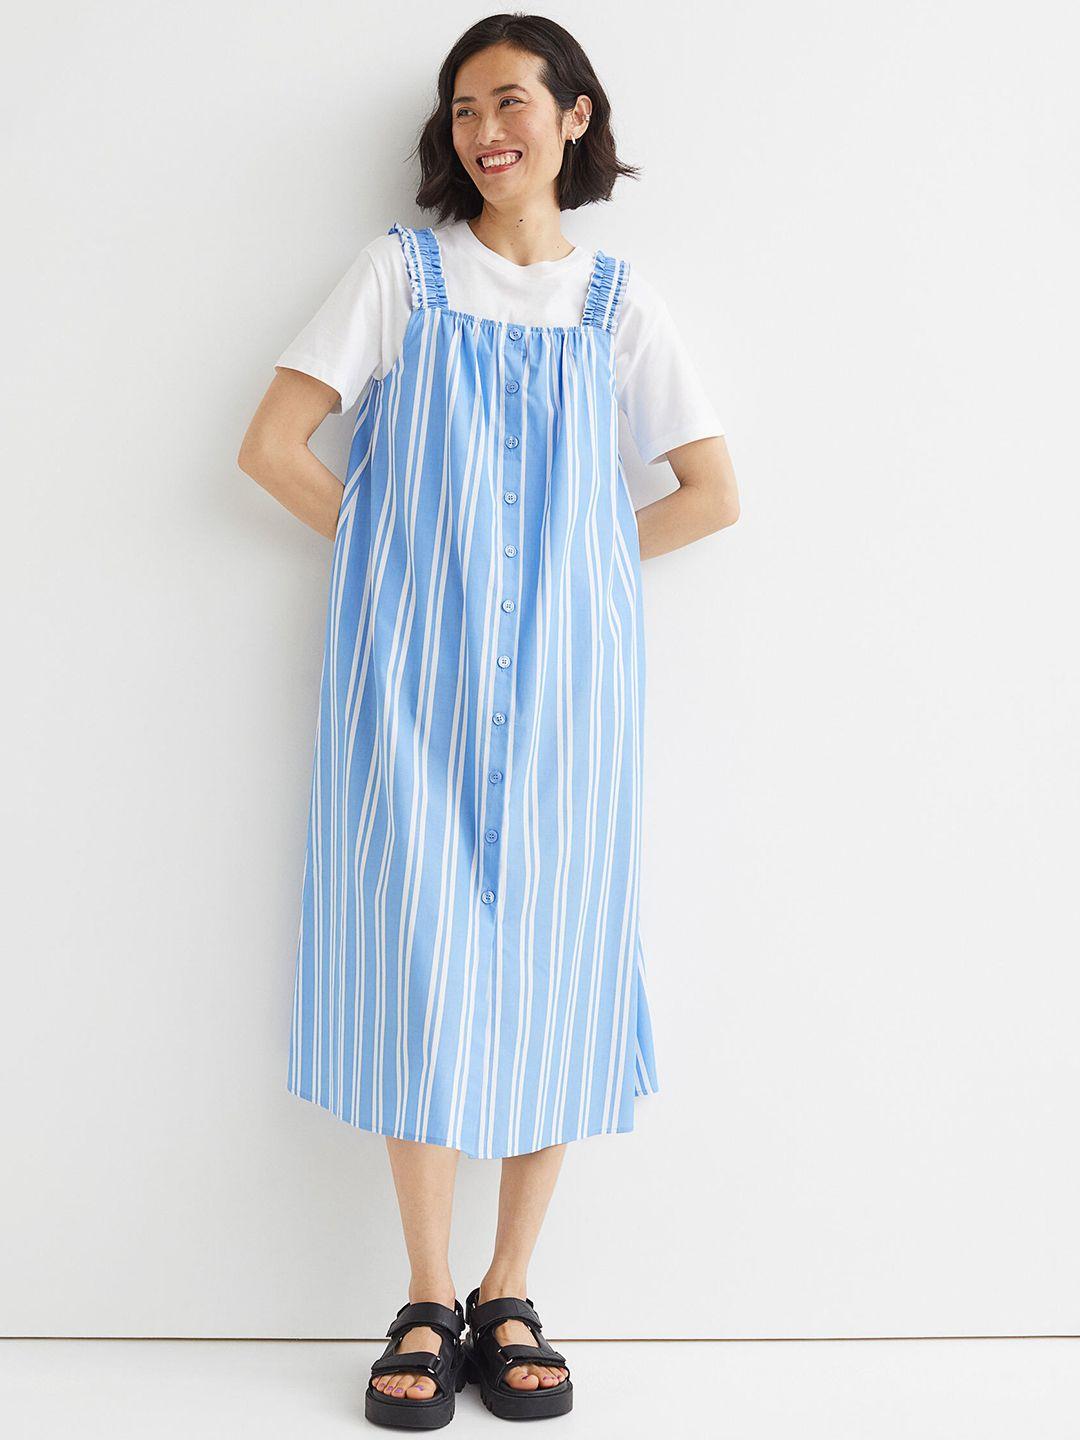 h&m women blue & white striped cotton a-line dress